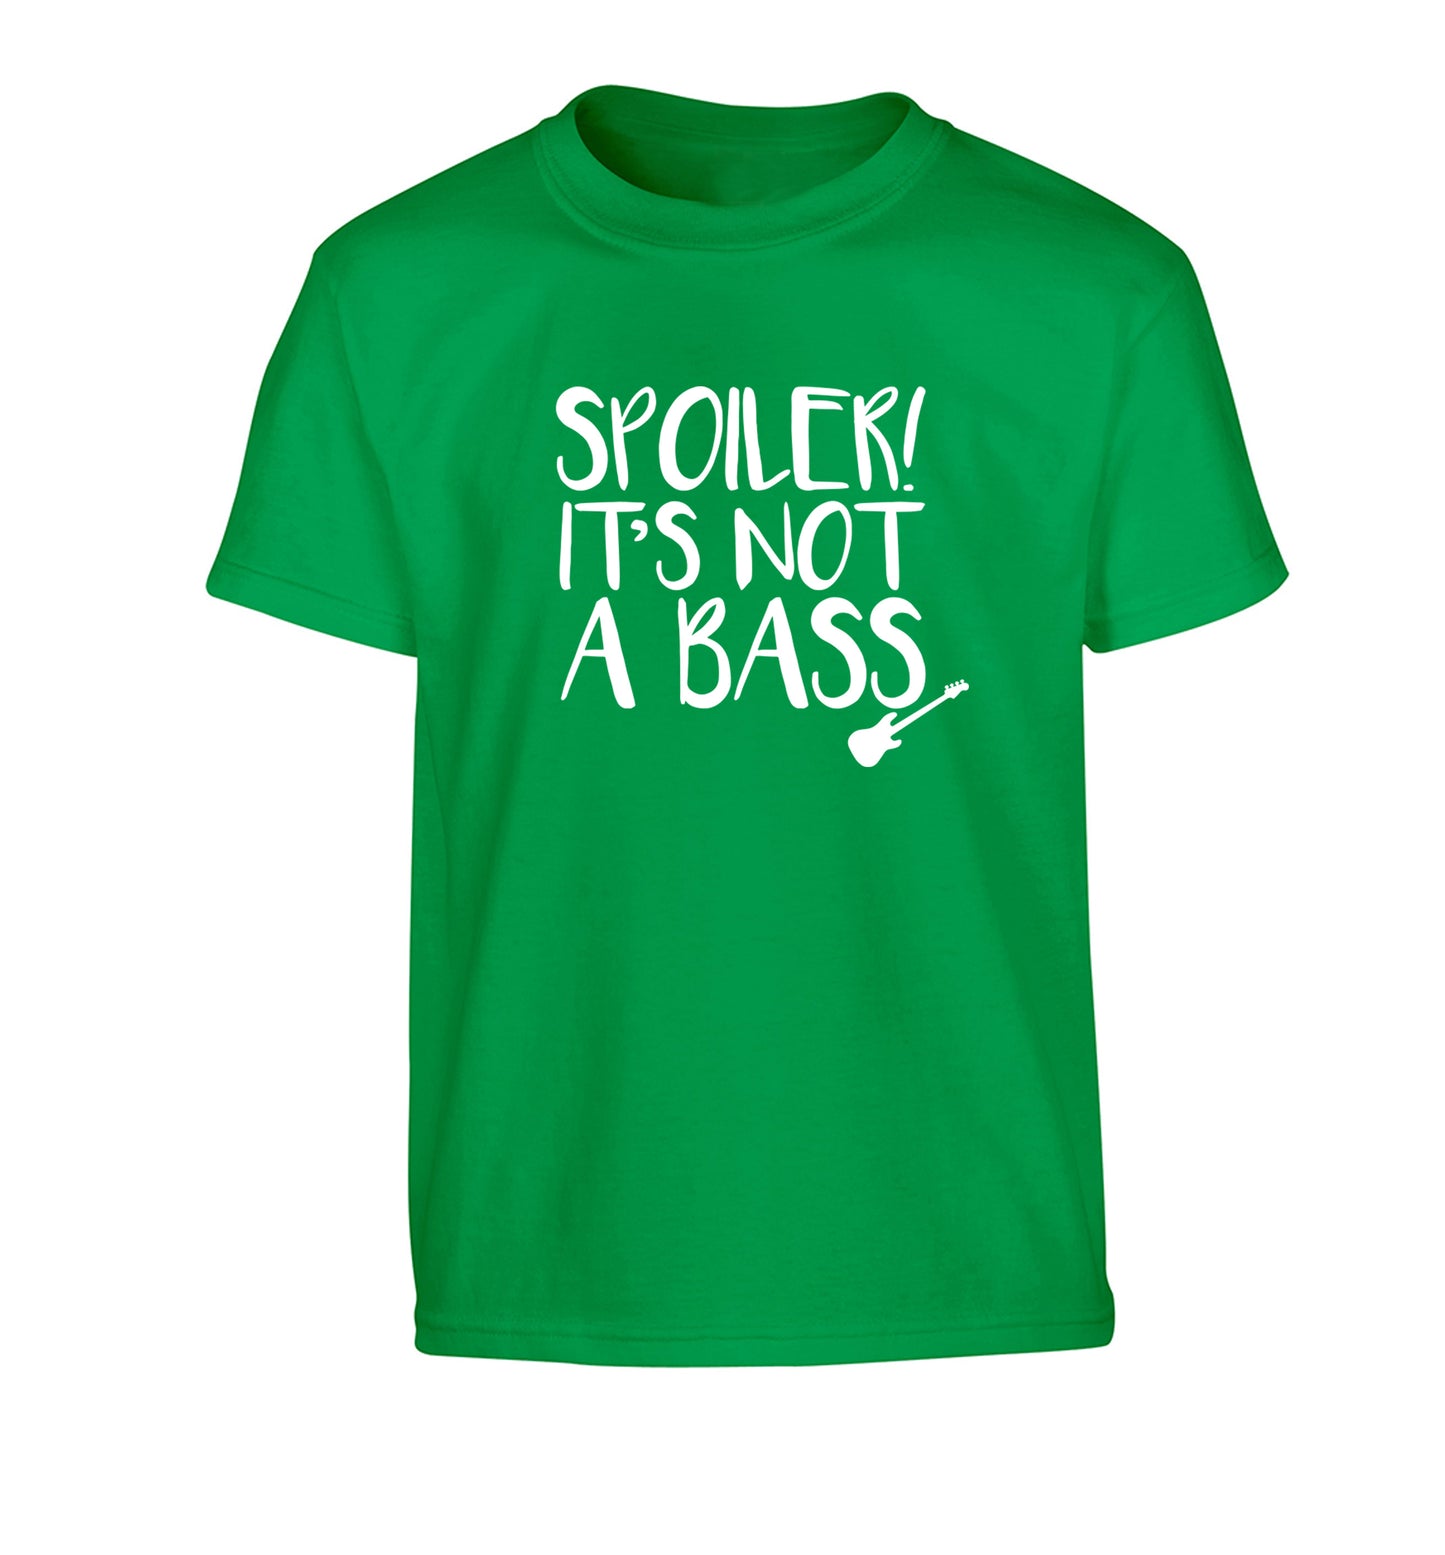 Spoiler it's not a bass Children's green Tshirt 12-13 Years